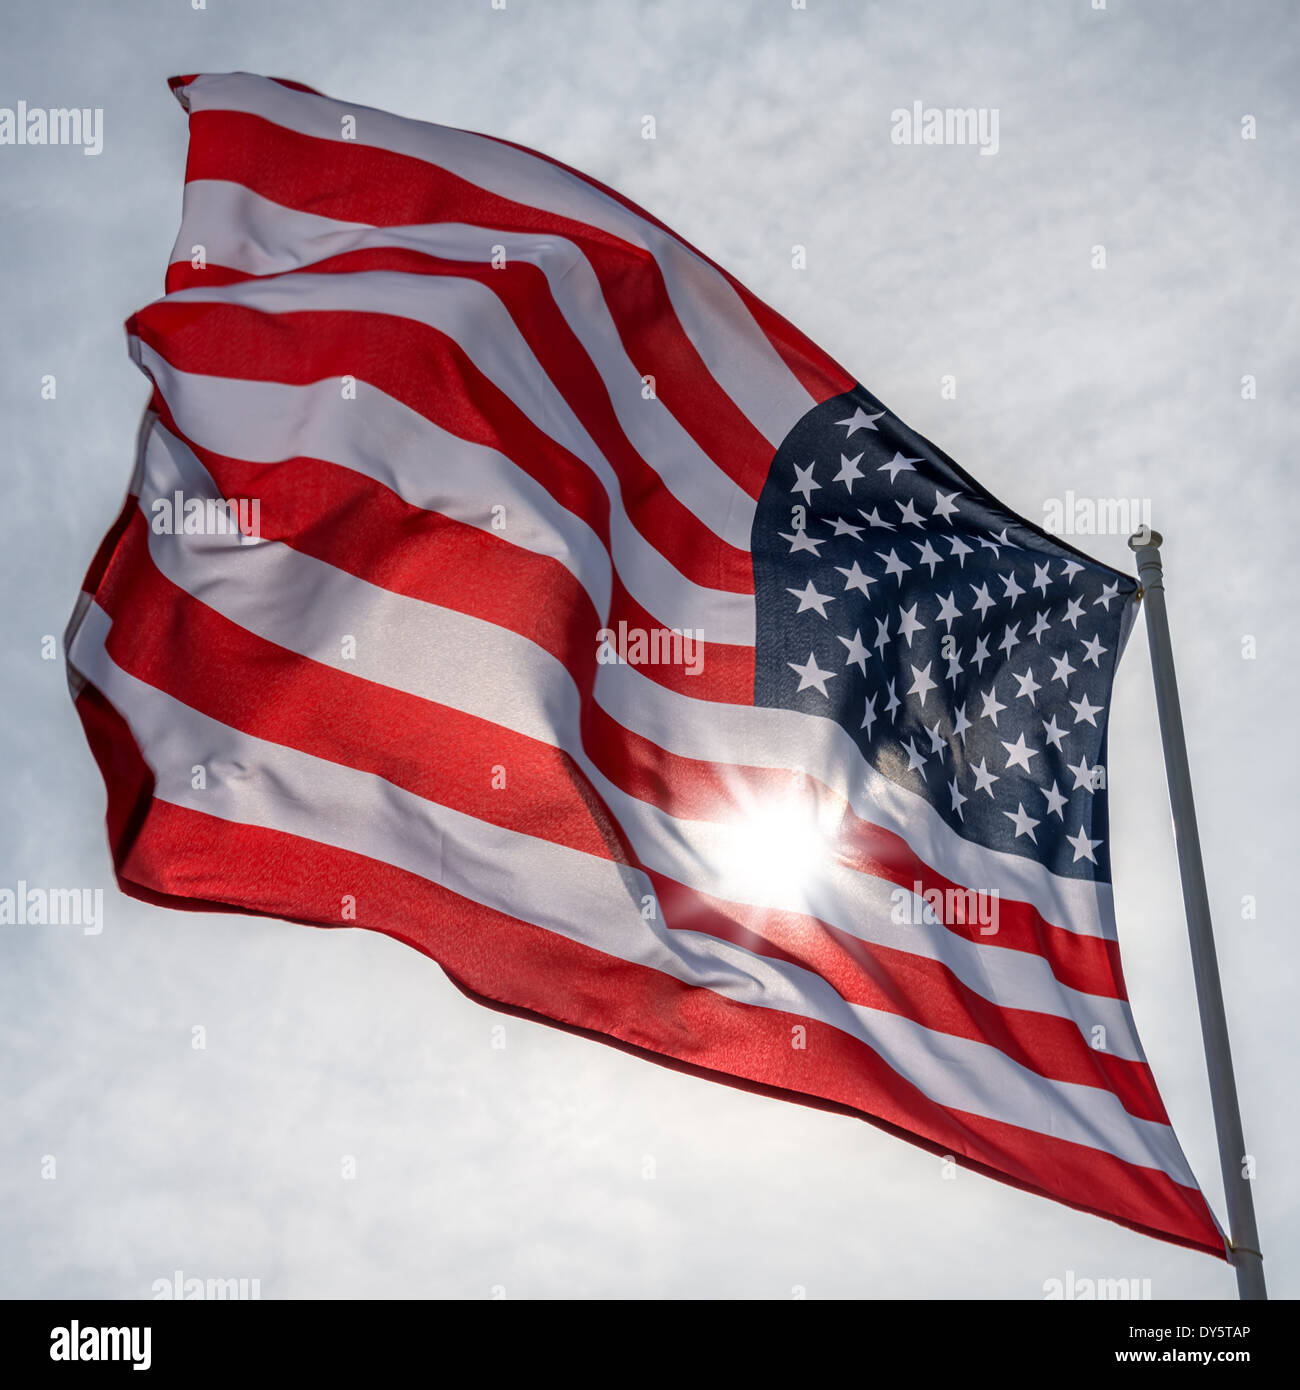 amerikanische Flagge am Himmelshintergrund Stockfoto